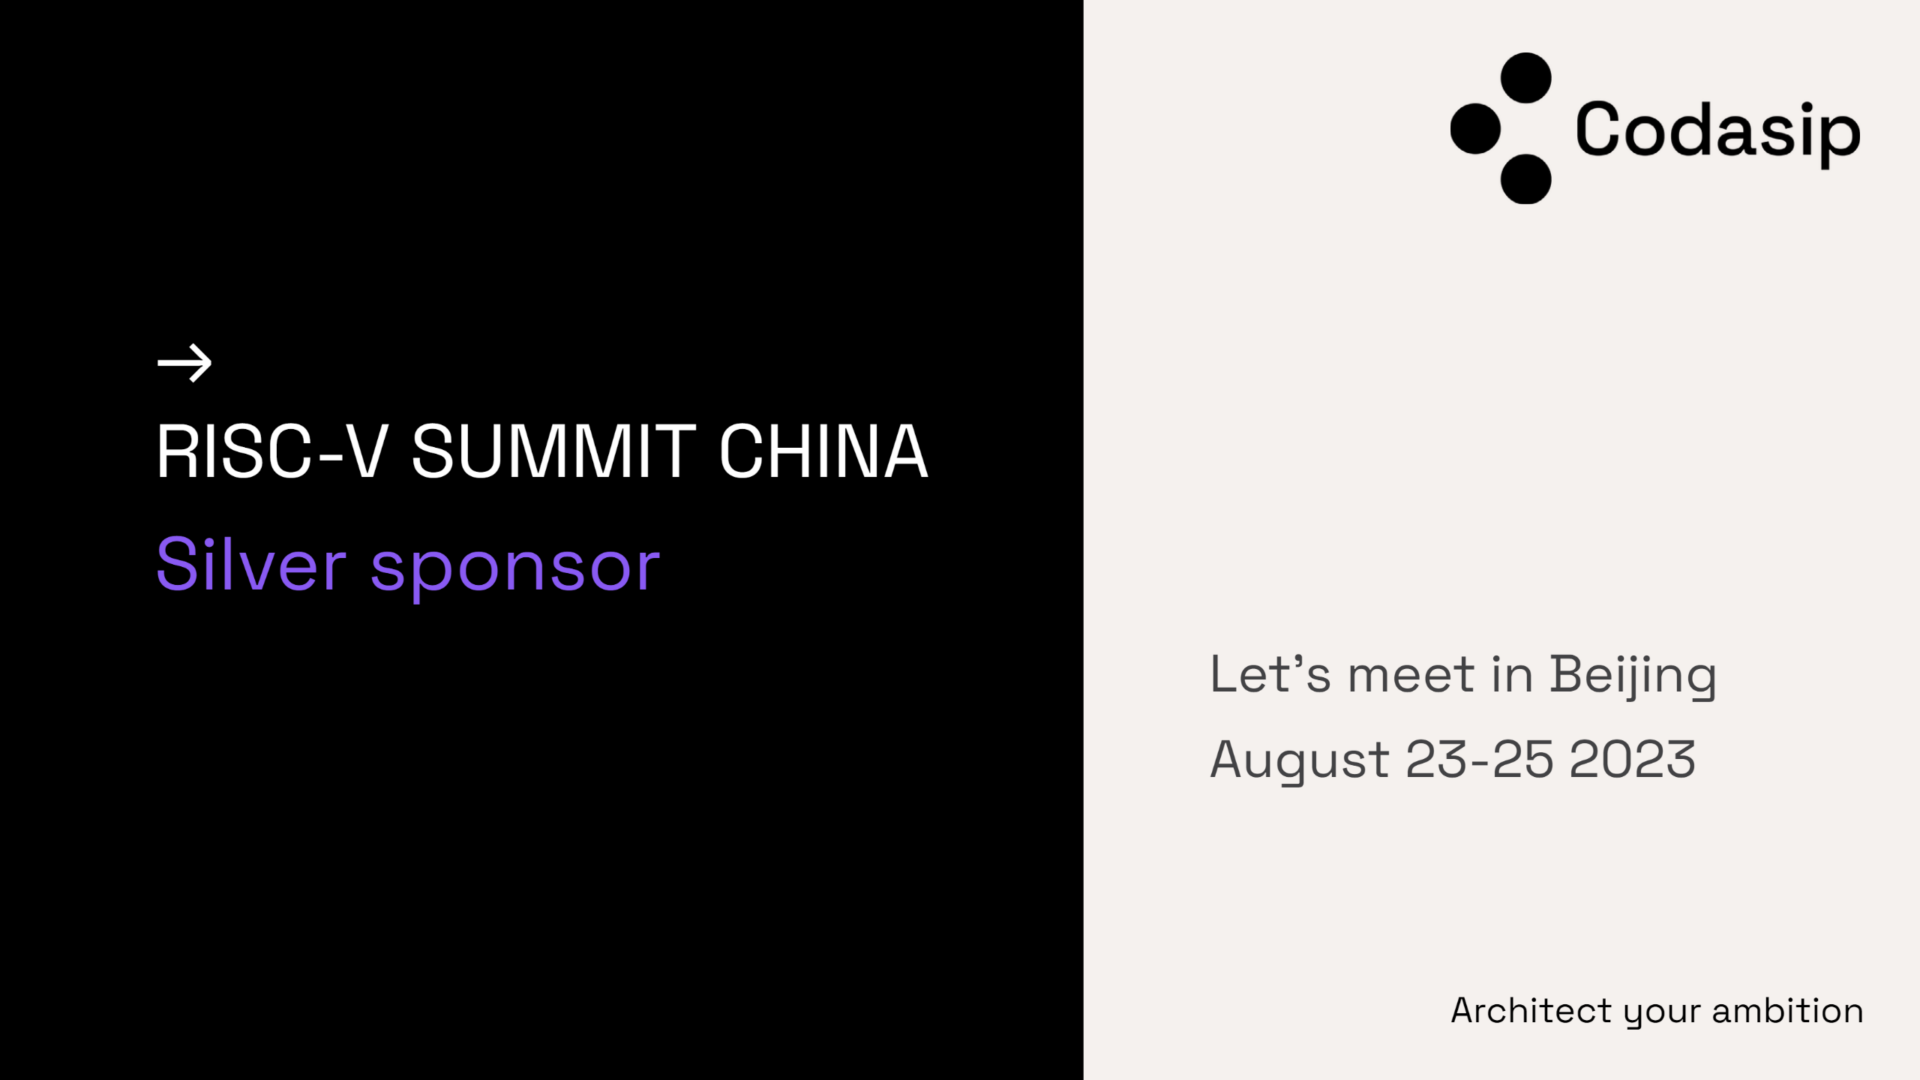 Codasip at RISC-V summit China 2023, silver sponsor